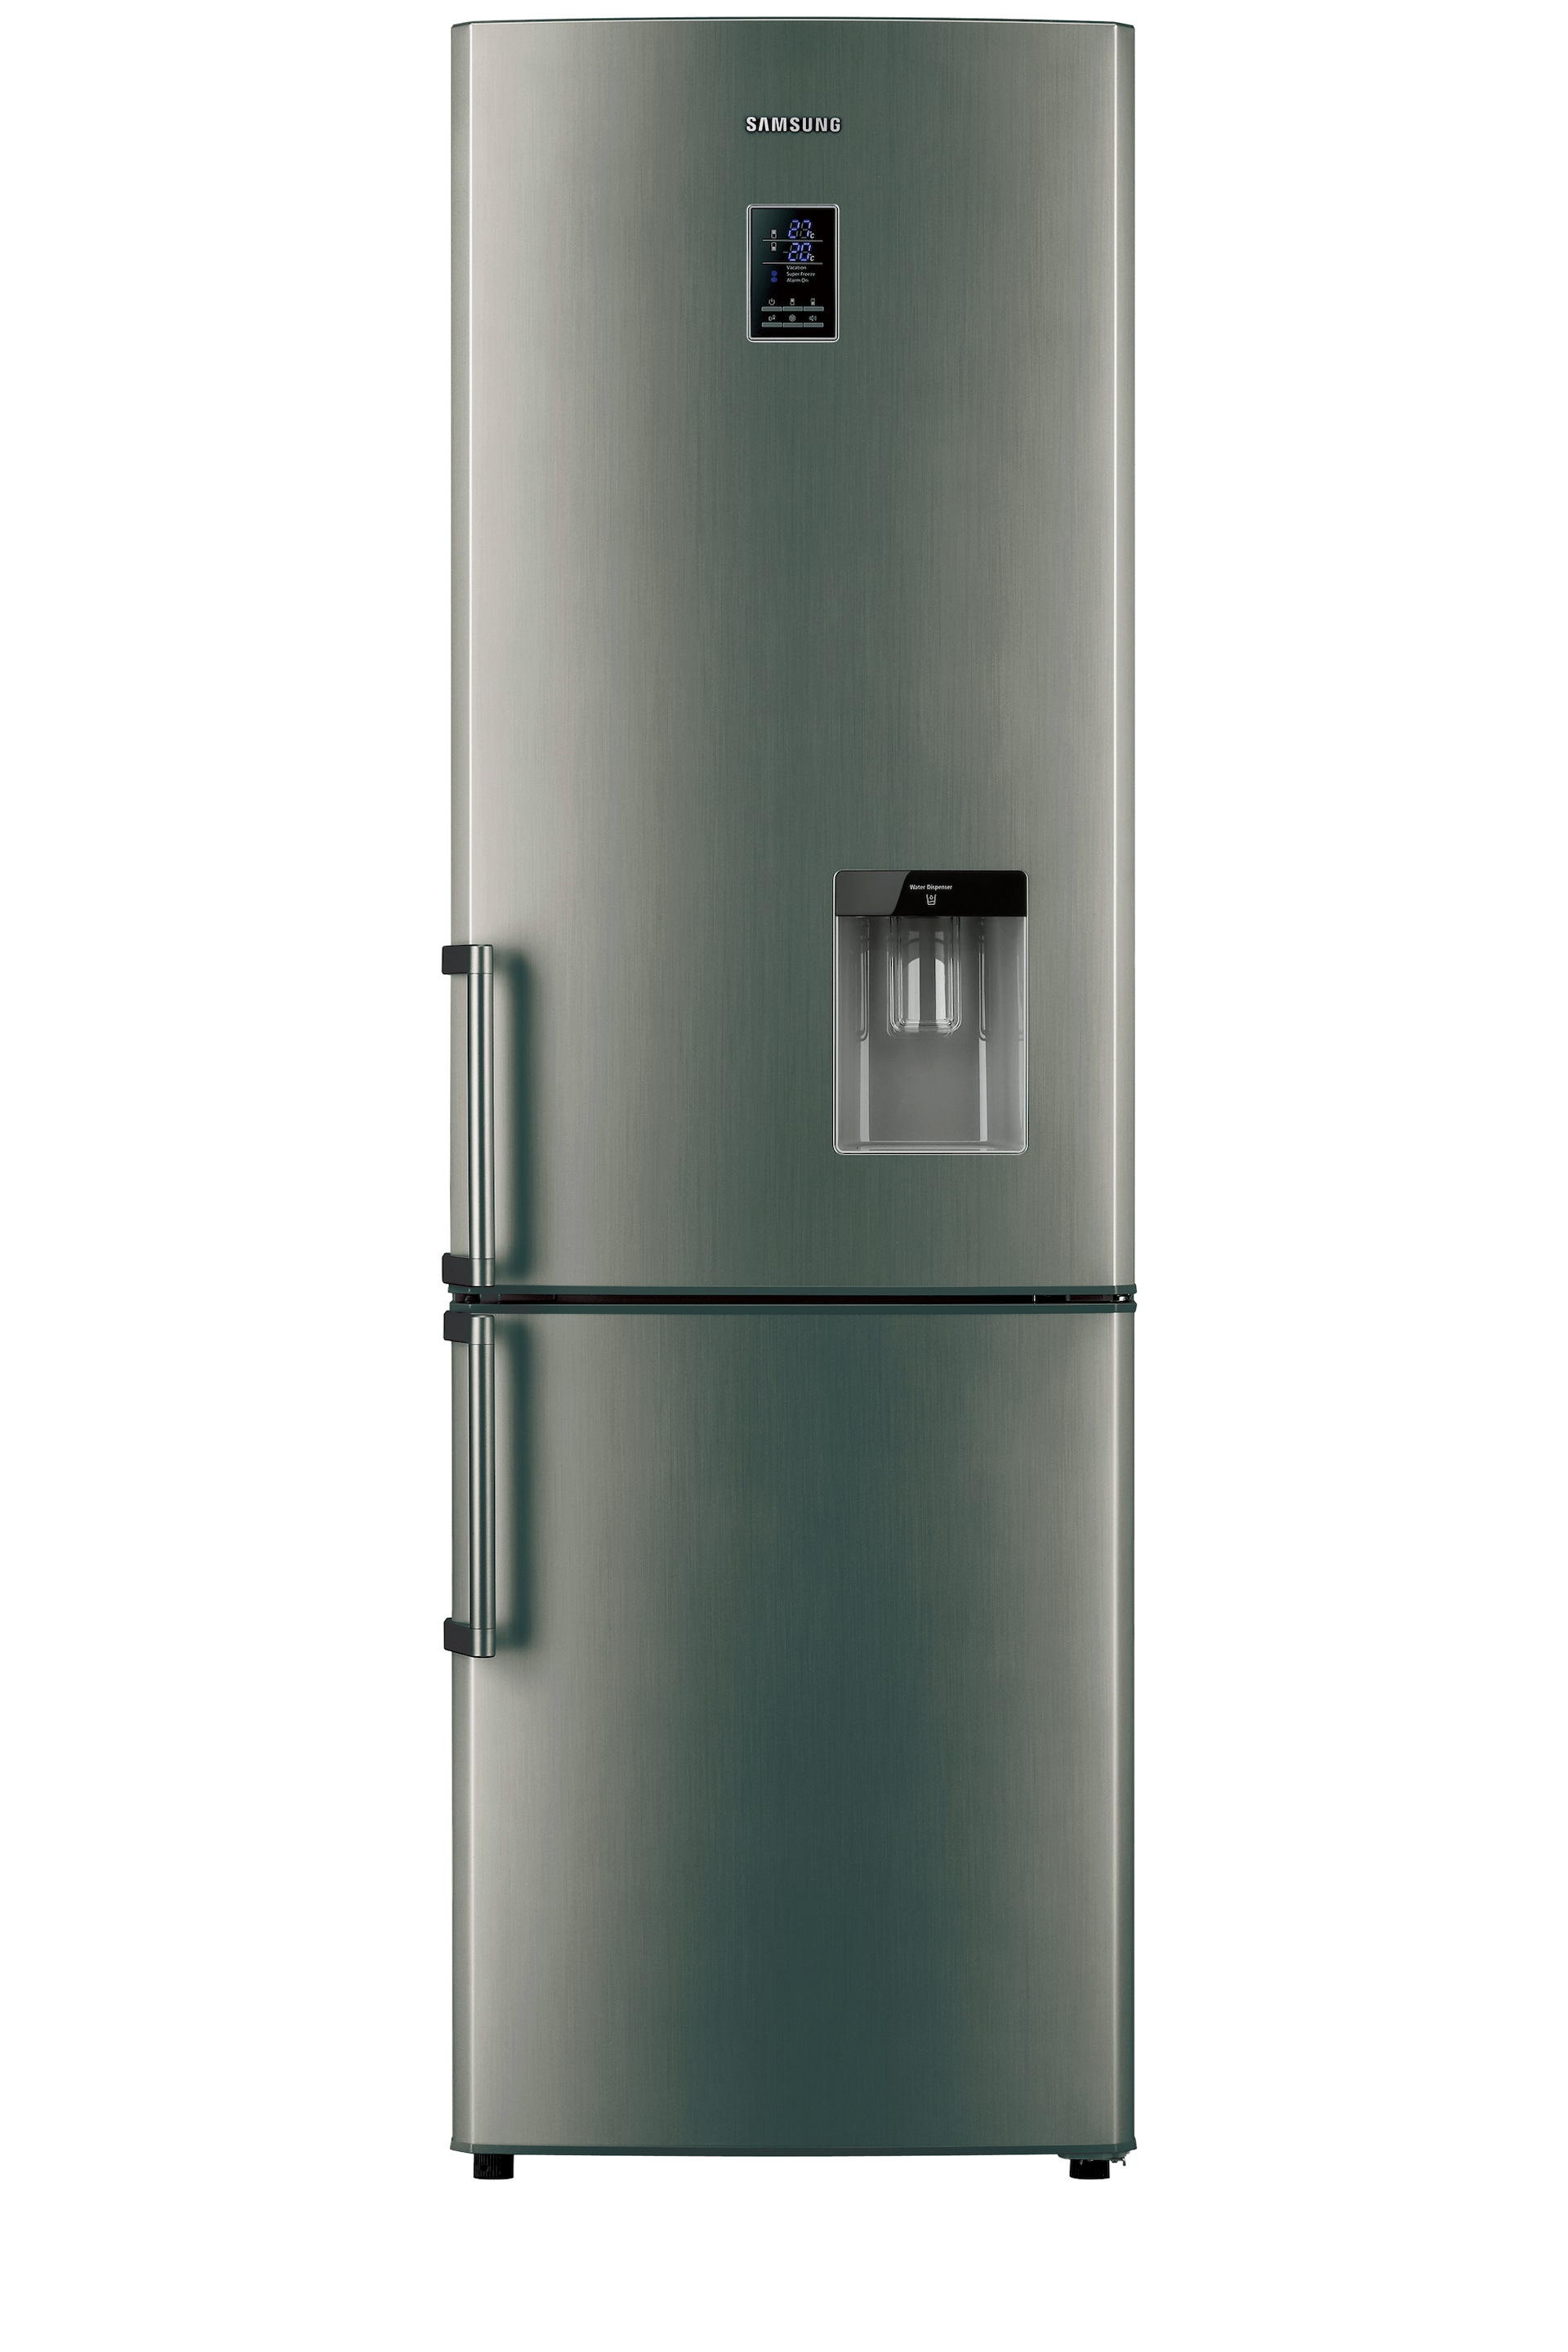 Samsung Fridge Samsung Fridge Kitchen Refrigerator